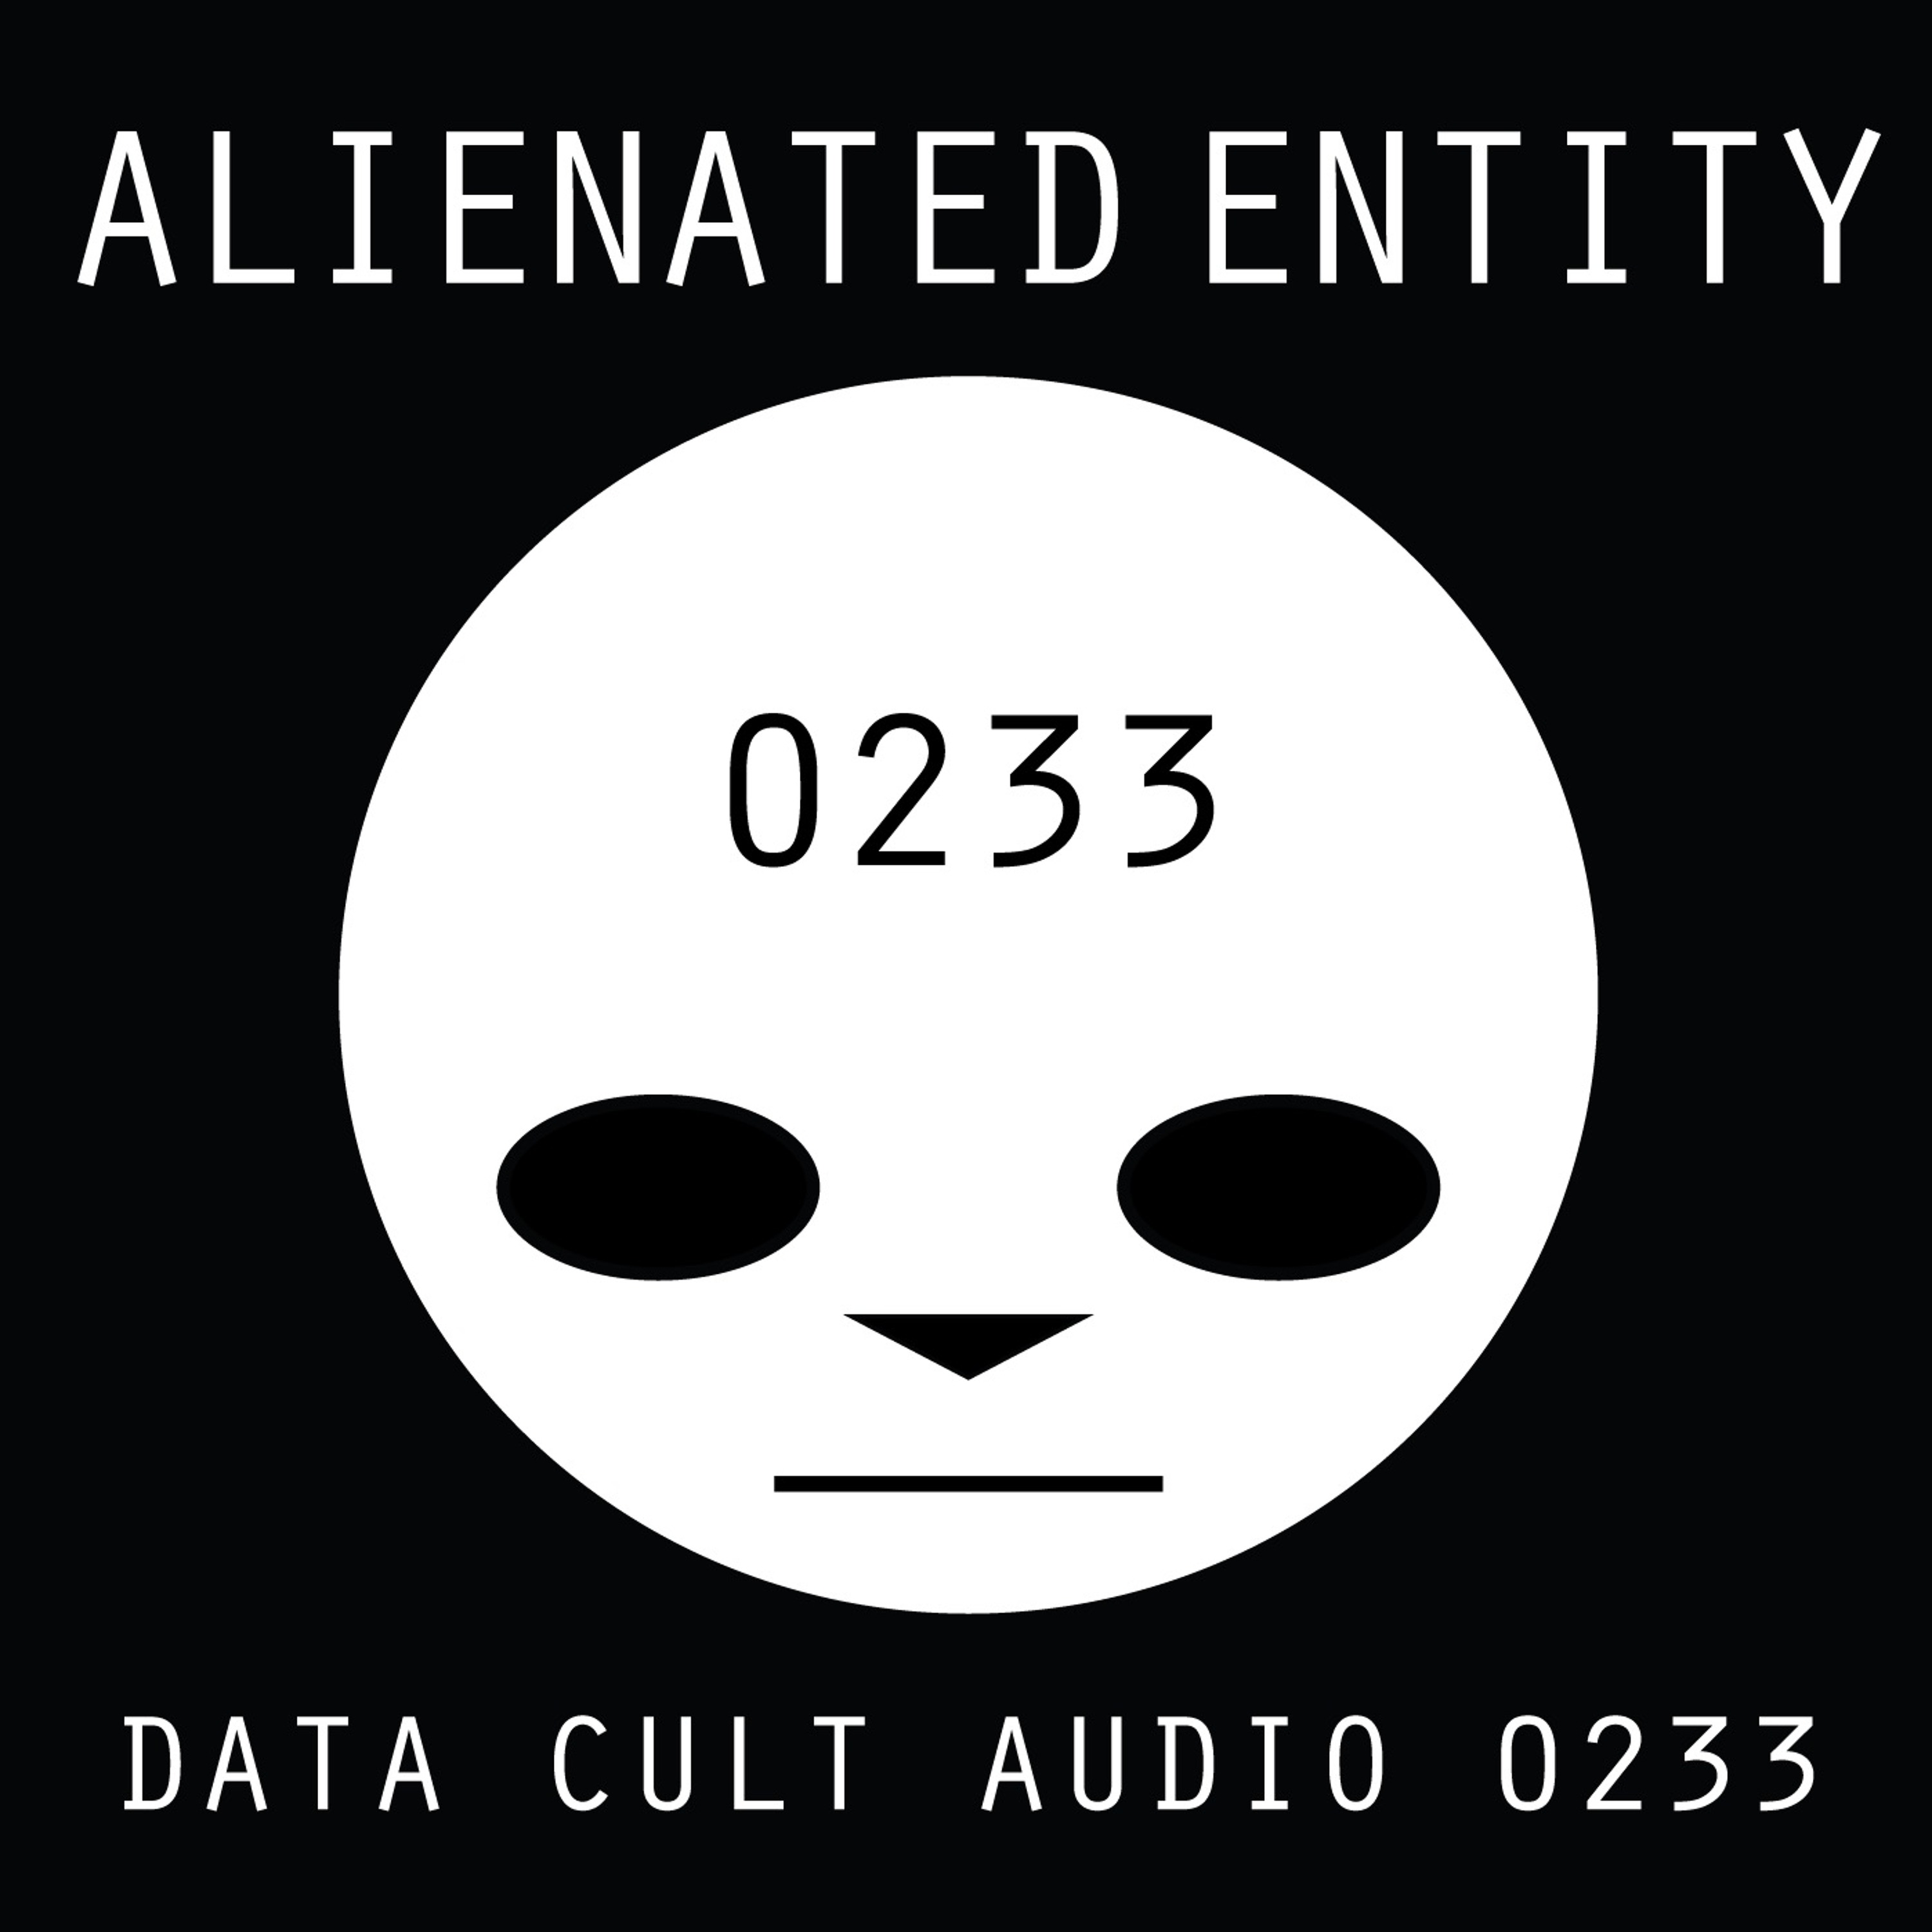 Data Cult Audio 0233 - Alienated Entity